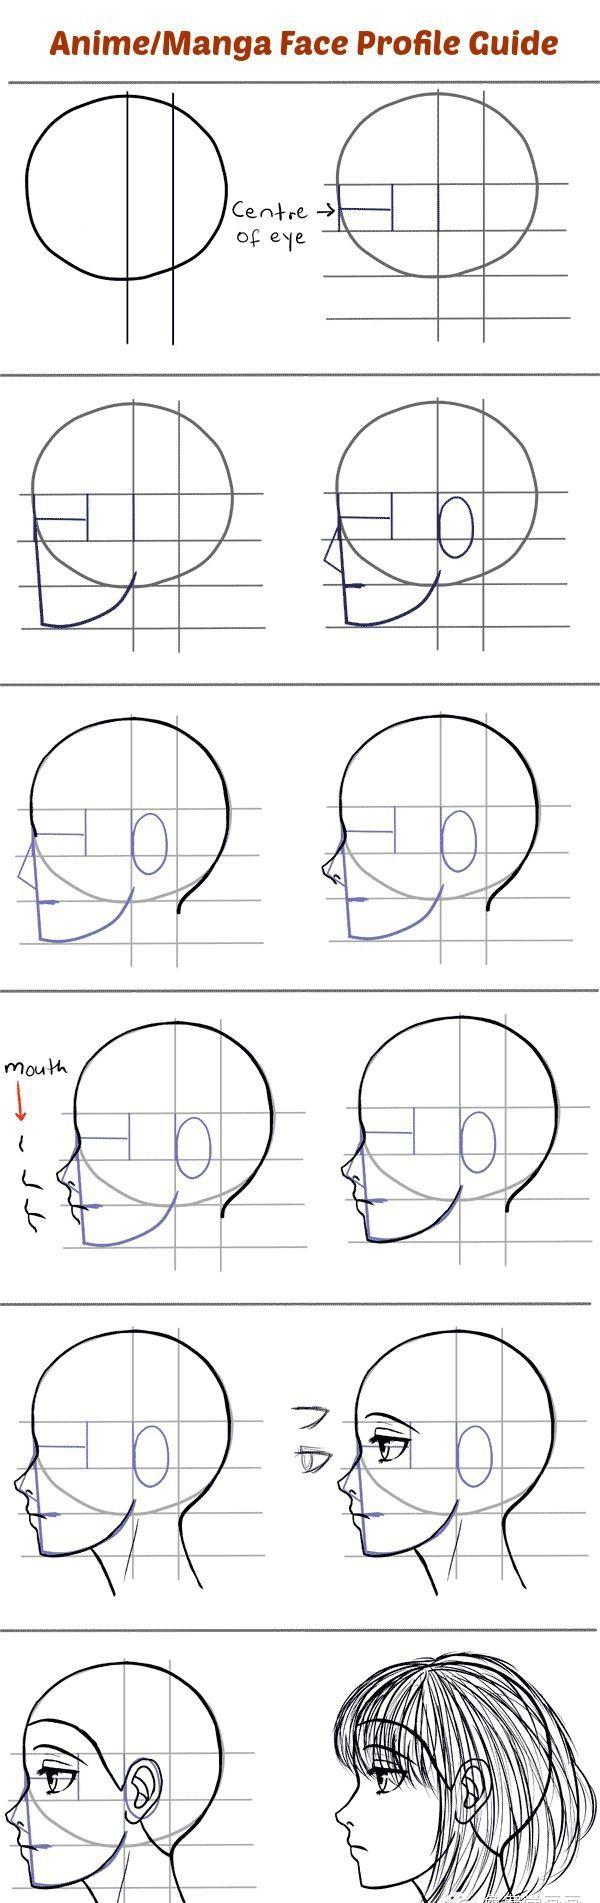 浅谈动漫人物脸型画法及脸部结构比例